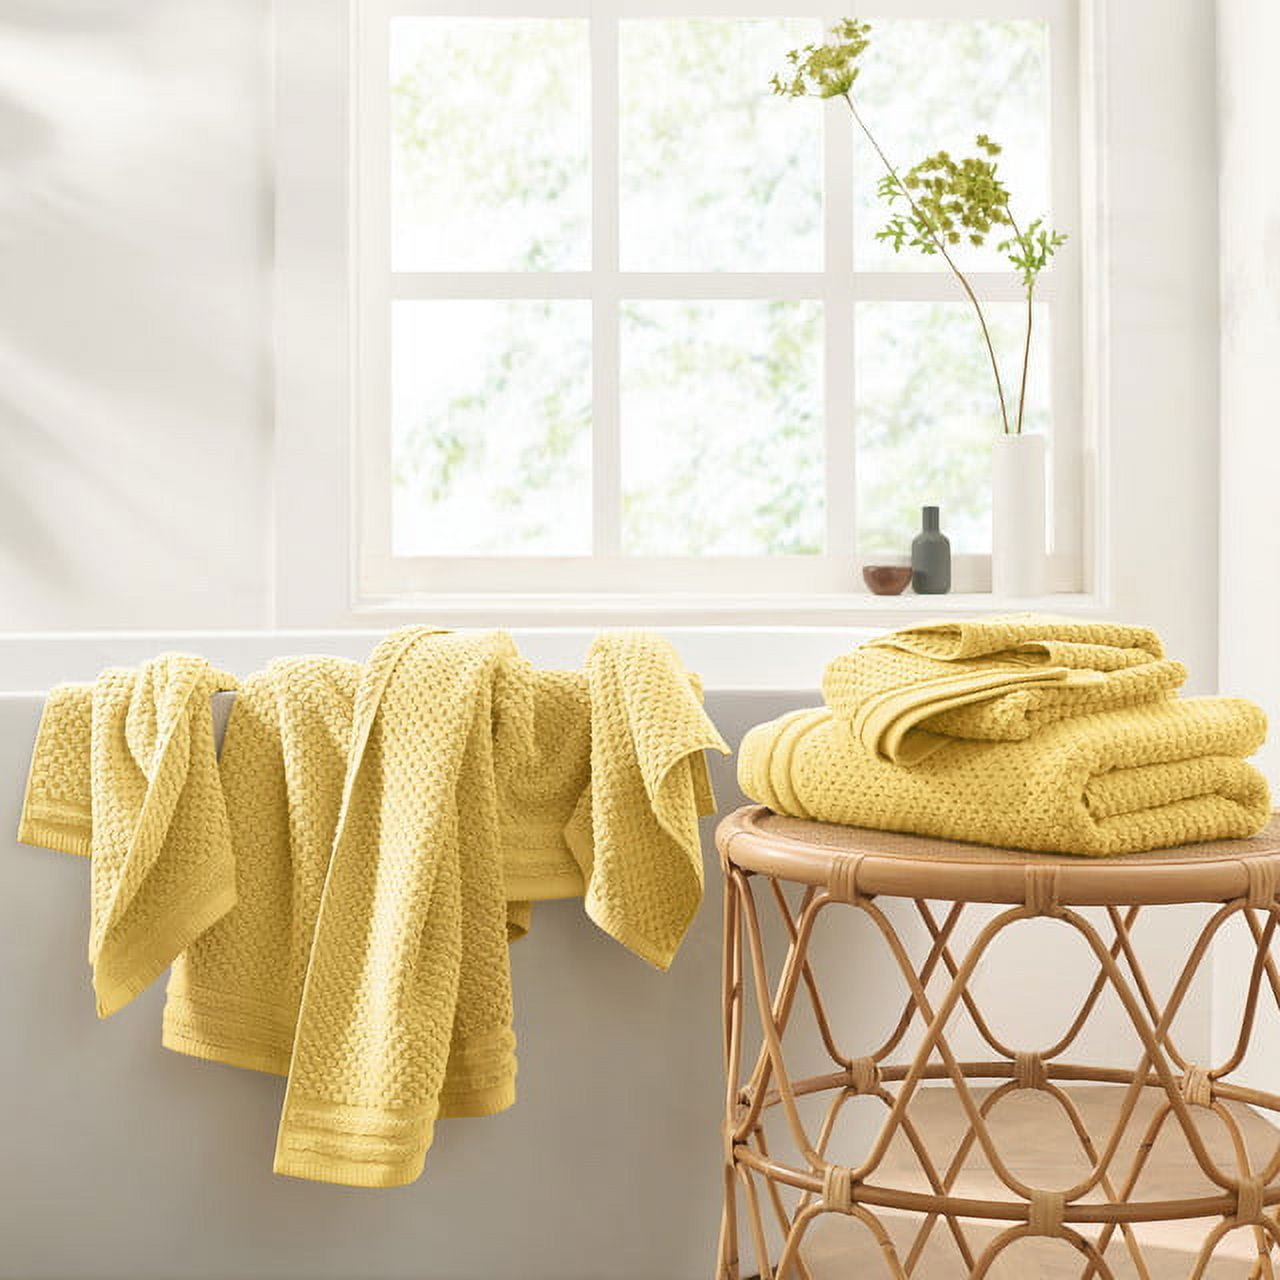 Shop Super Soft Cotton Quick Dry Bath Towel 6 Piece Set Yellow